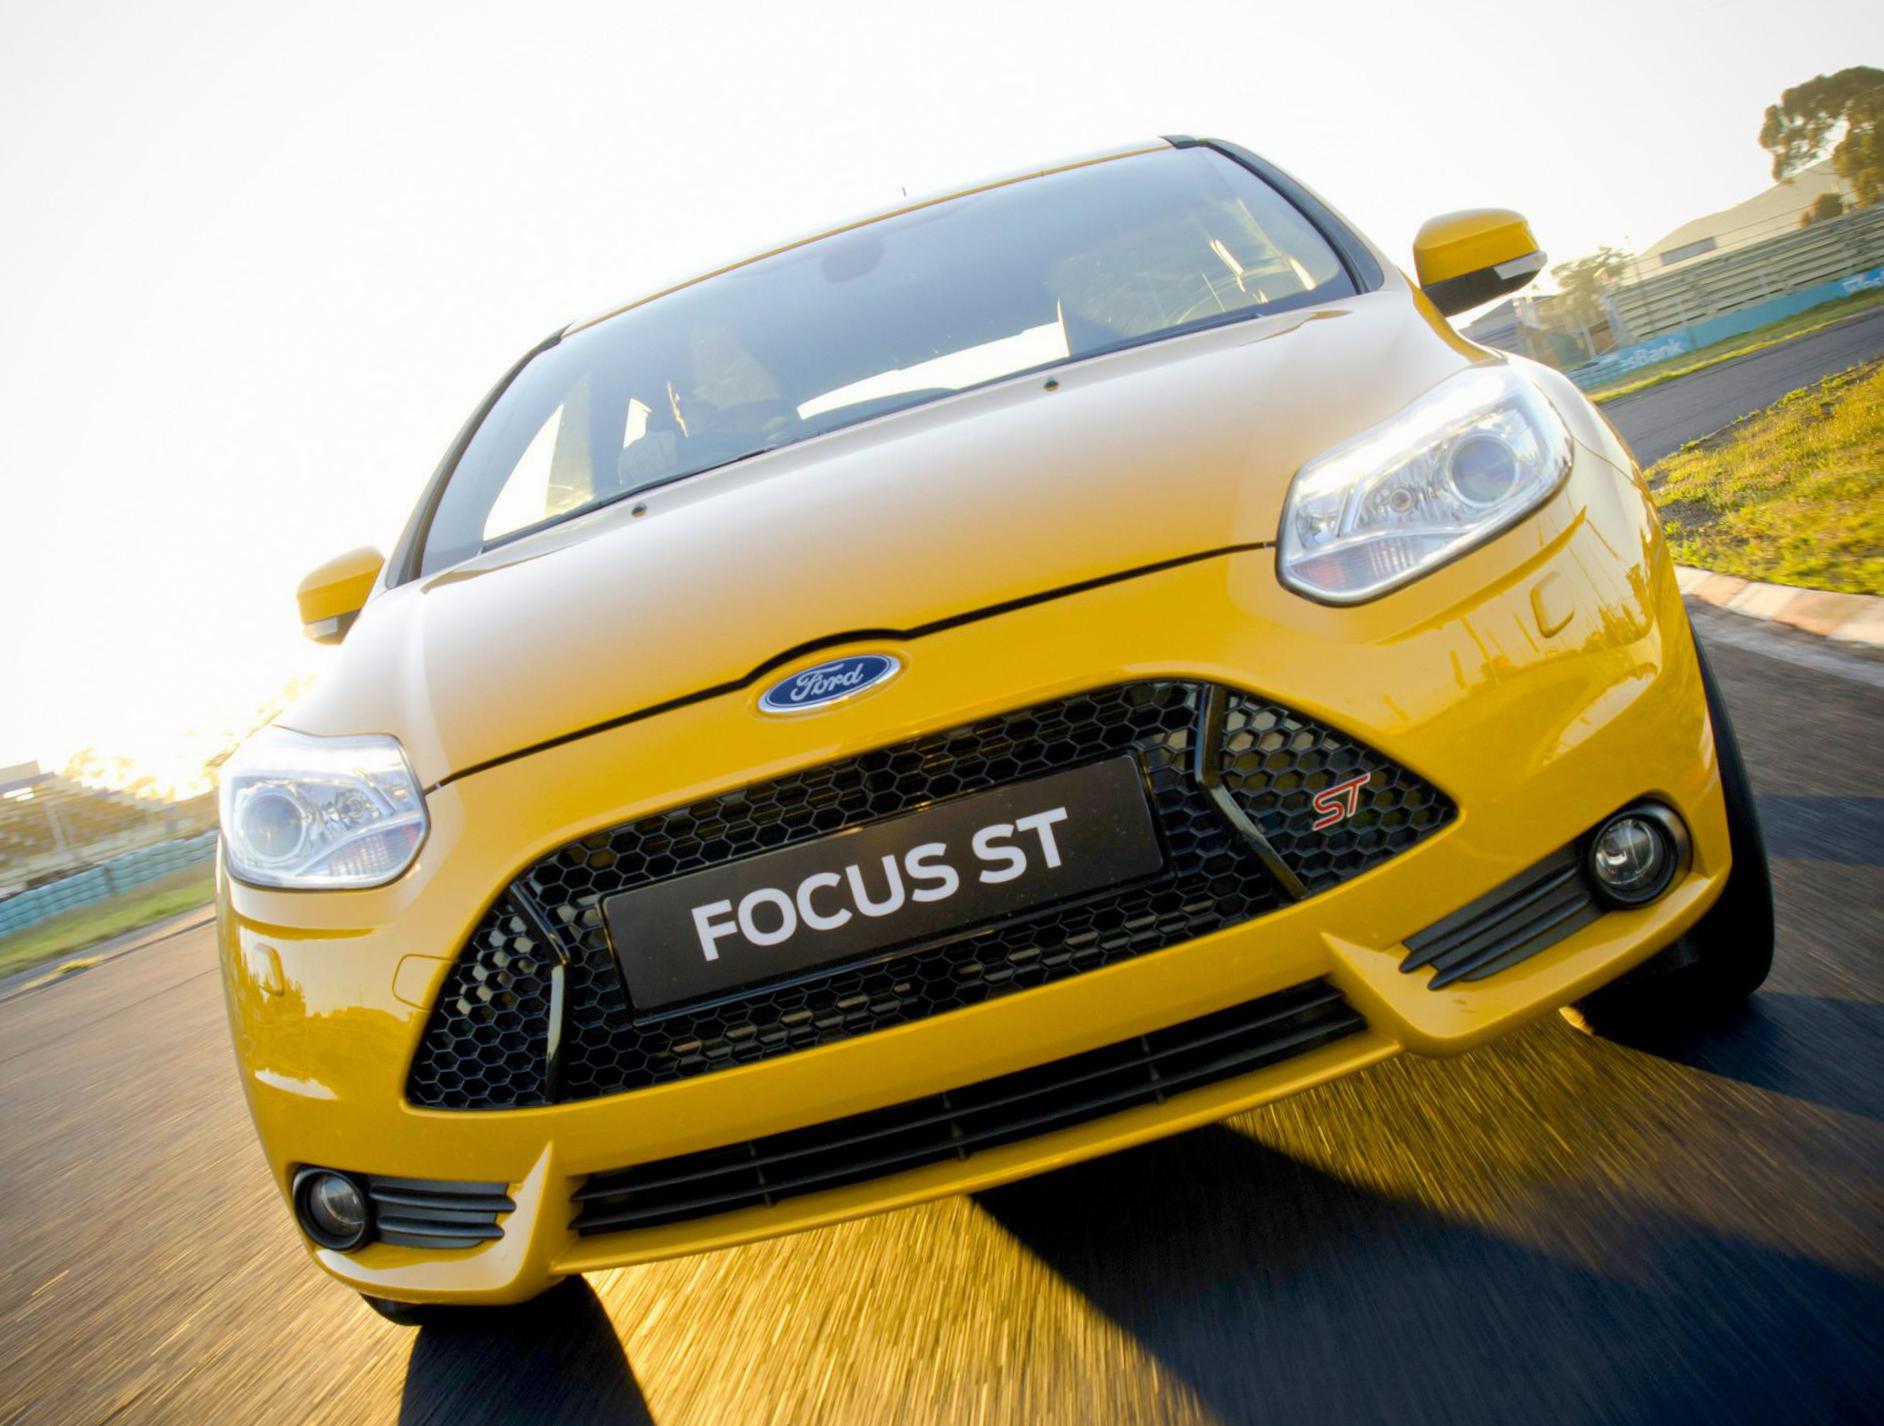 Focus 5 doors Ford model hatchback